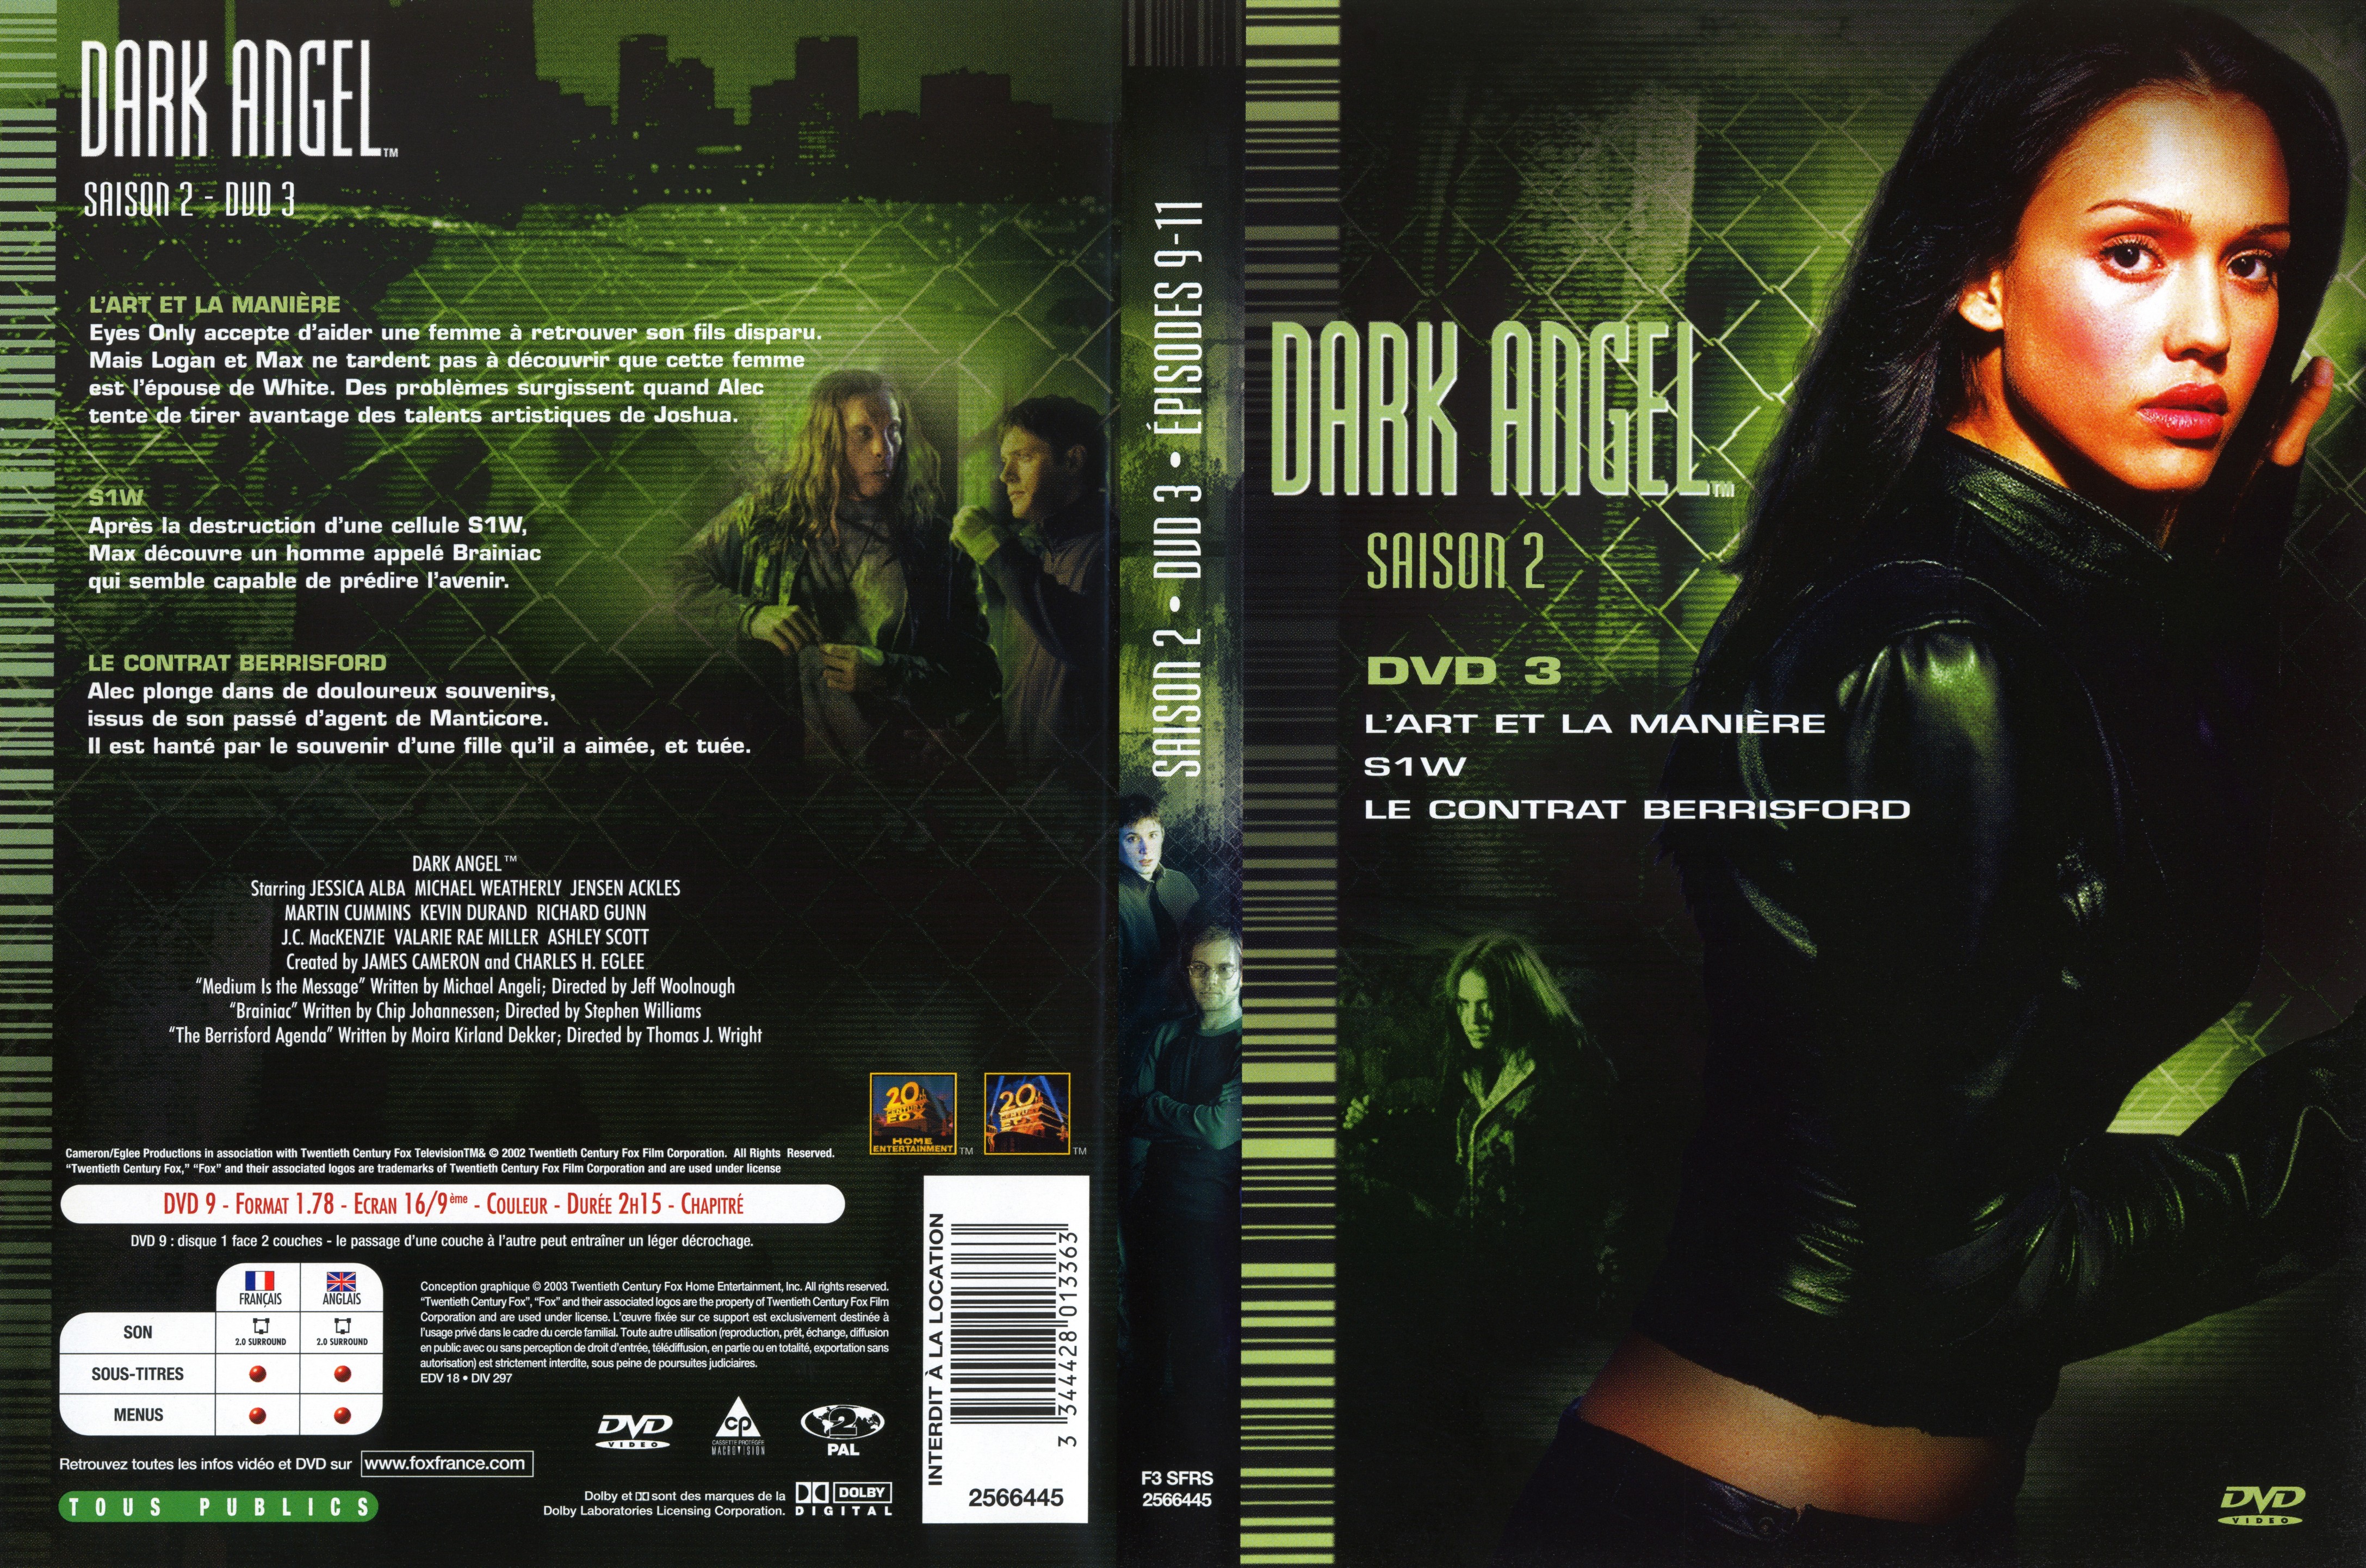 Jaquette DVD Dark Angel Saison 2 DVD 3